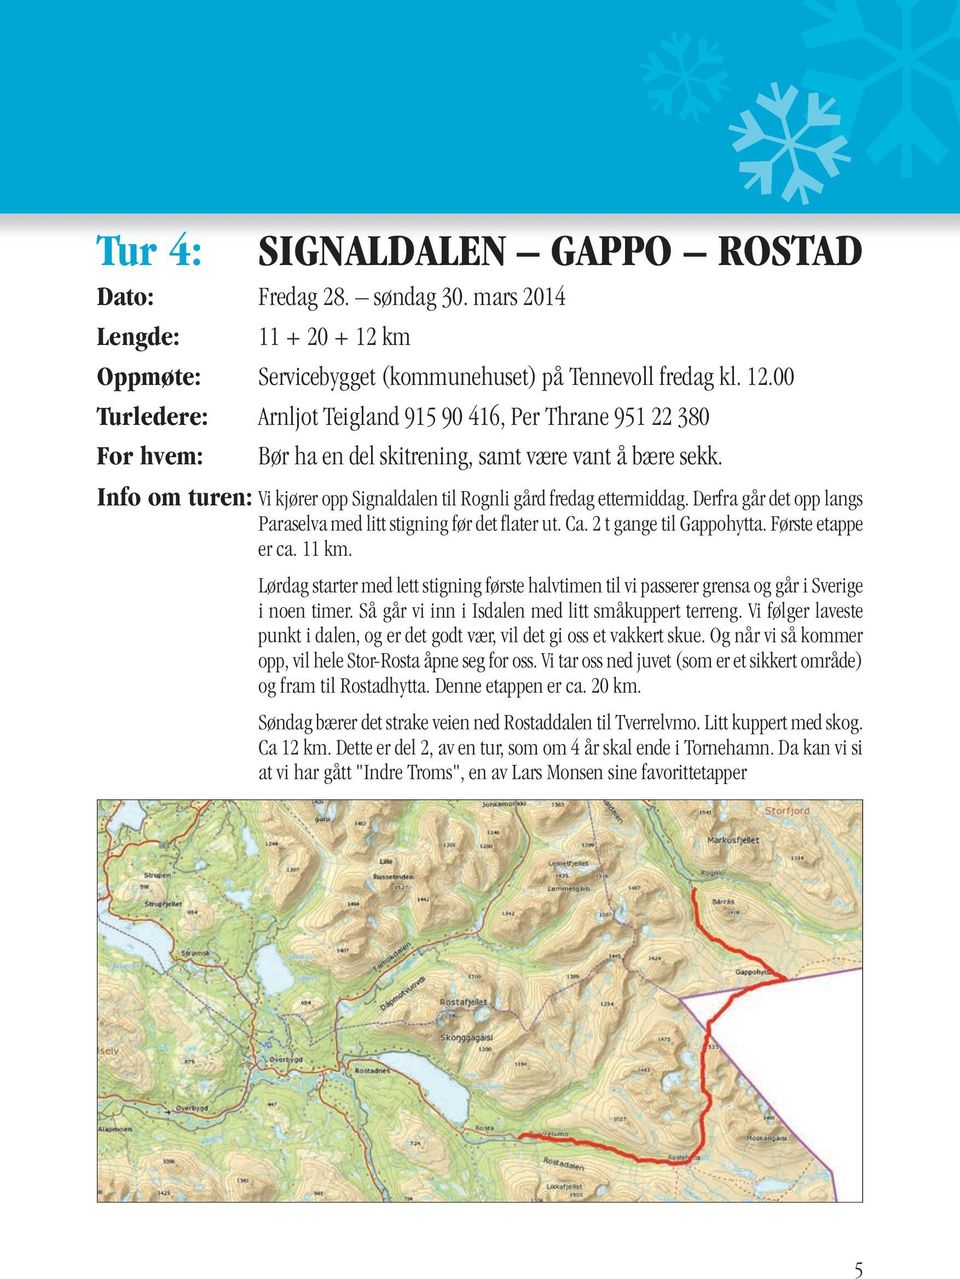 Info om turen: Vi kjører opp Signaldalen til Rognli gård fredag ettermiddag. Derfra går det opp langs Paraselva med litt stigning før det flater ut. Ca. 2 t gange til Gappohytta. Første etappe er ca.